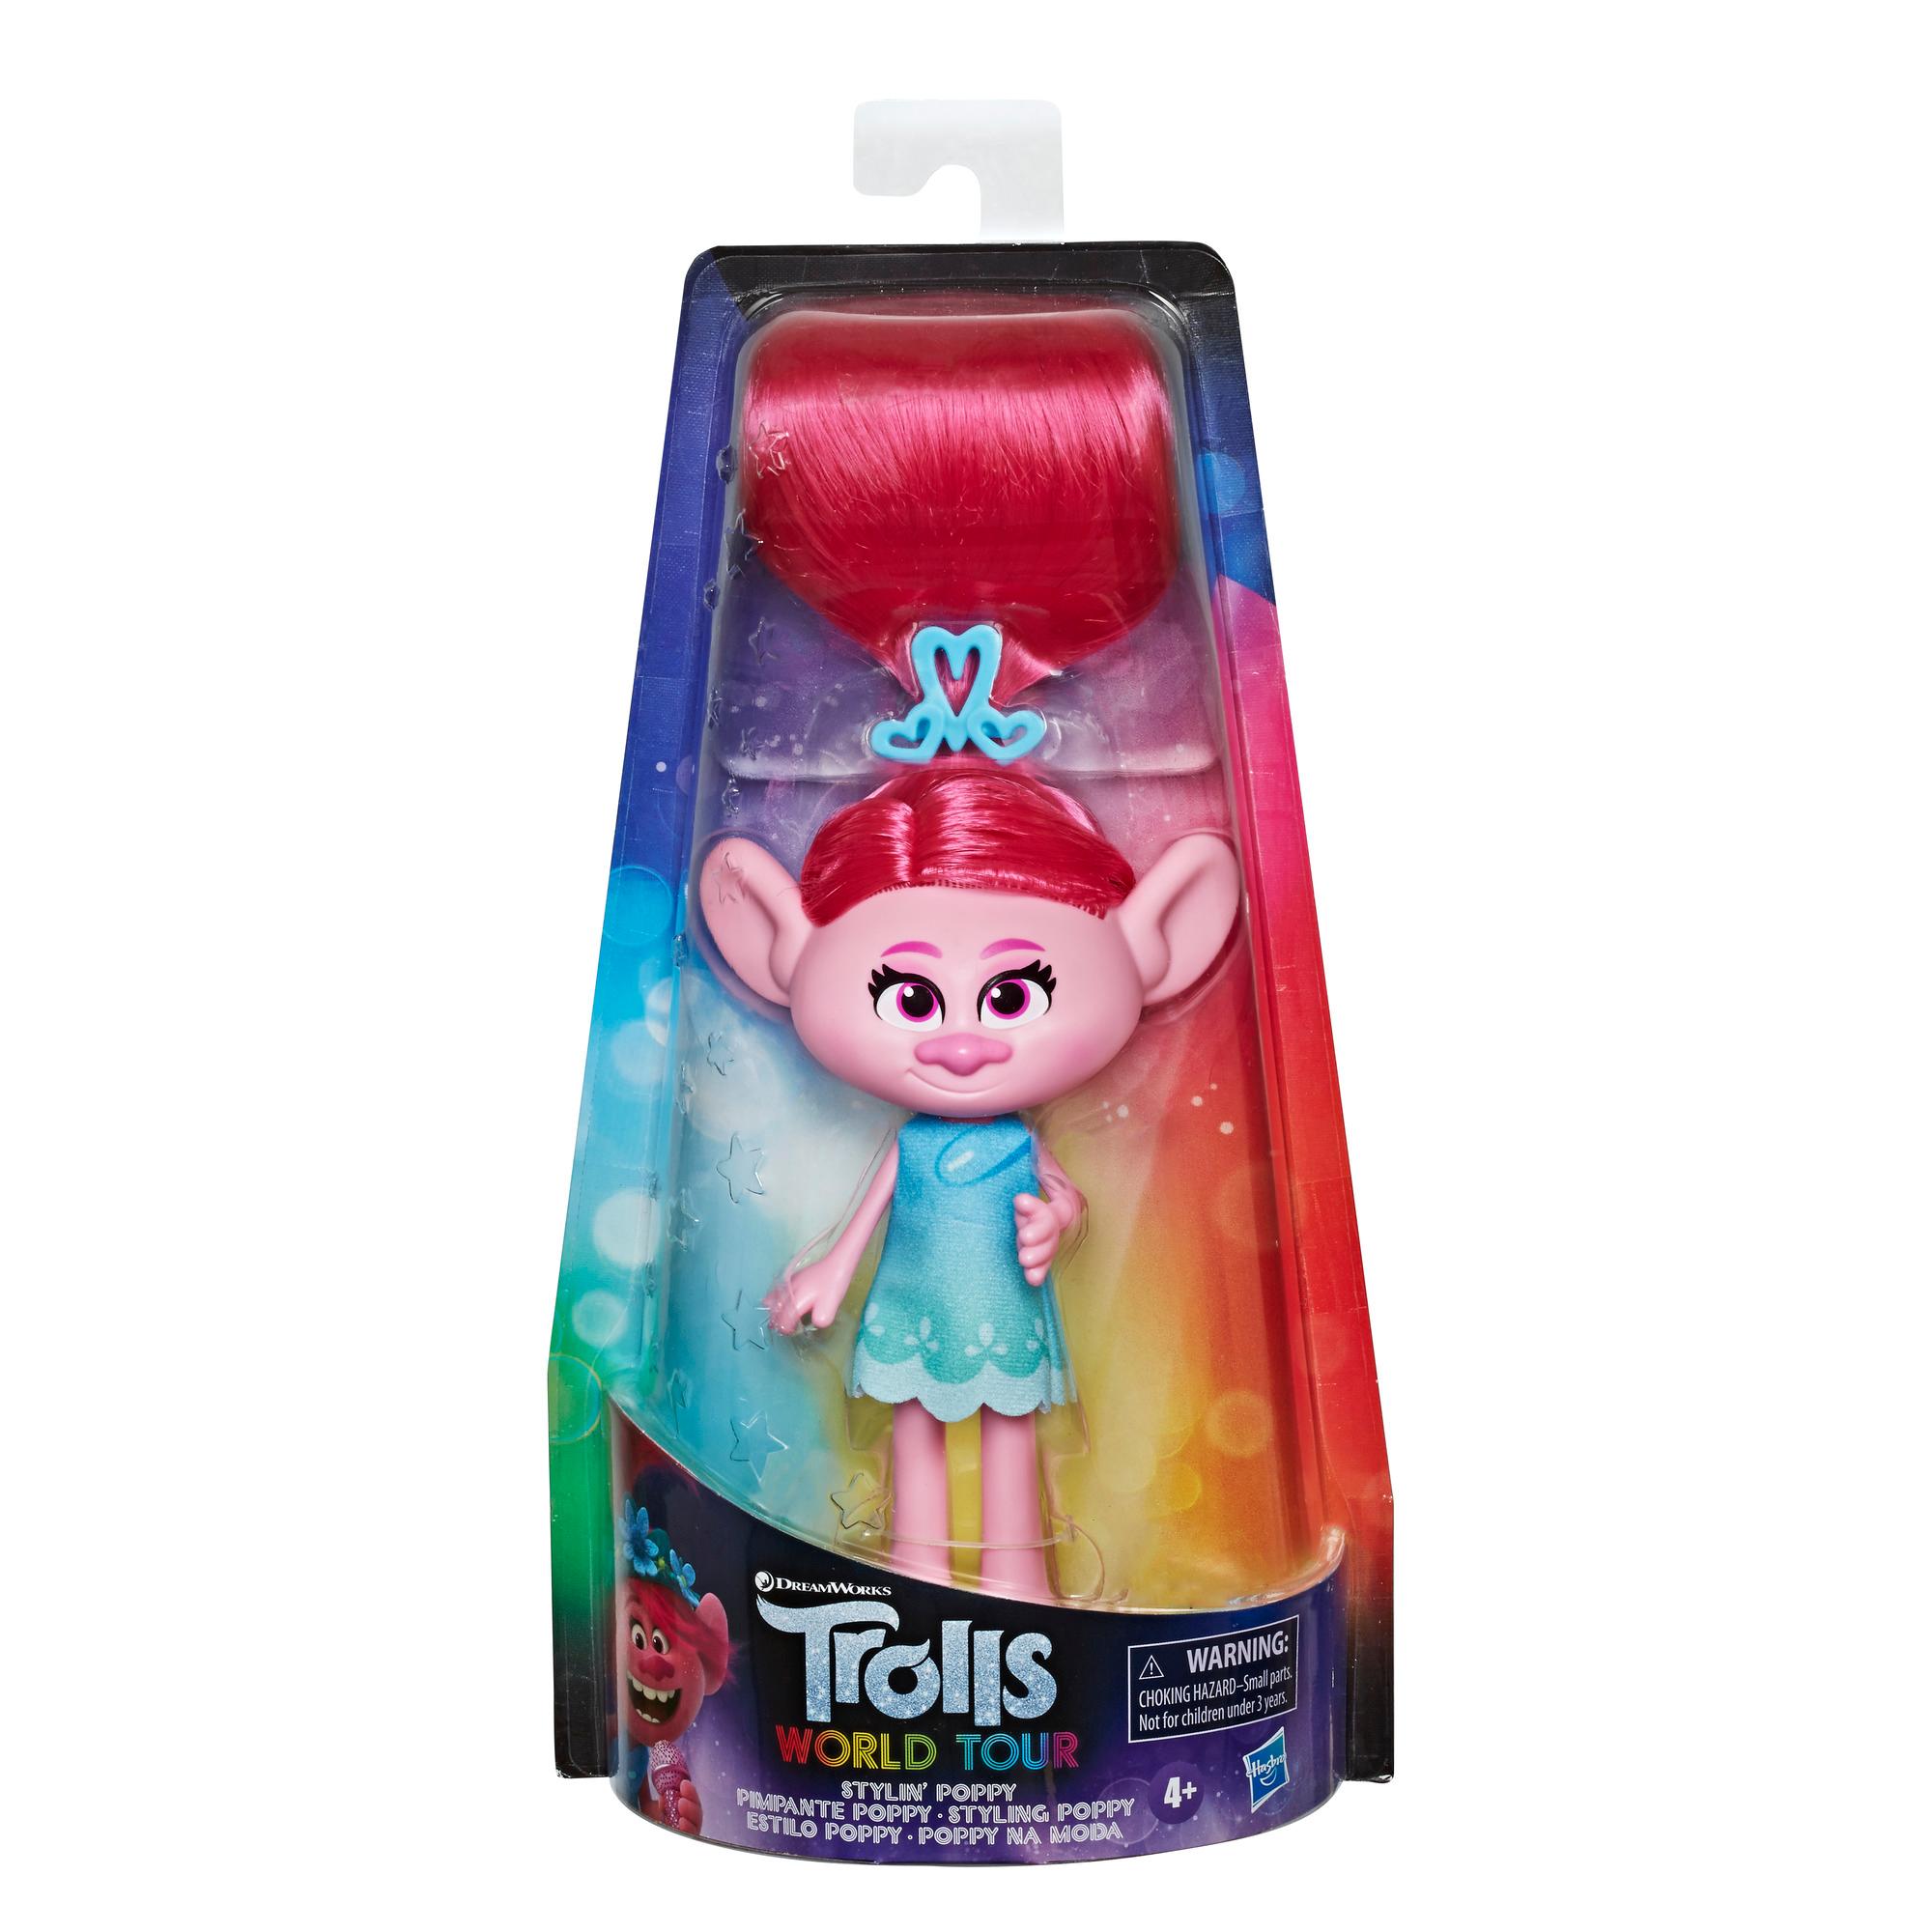 DreamWorks Trolls - Estilo Poppy - Figura con vestido removible y accesorio para el cabello, inspirada en Trolls 2